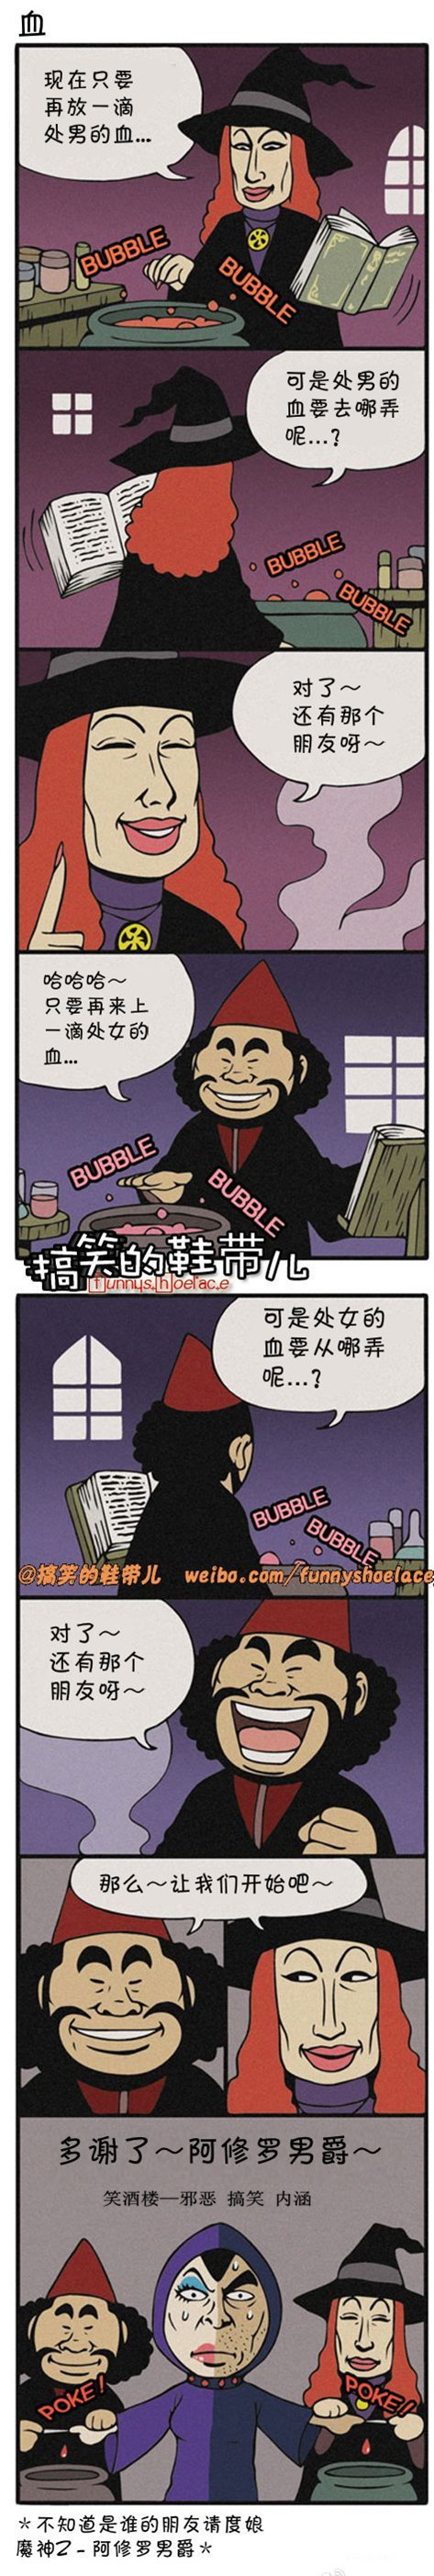 妖妖小精|4分钟料理系列漫画之血